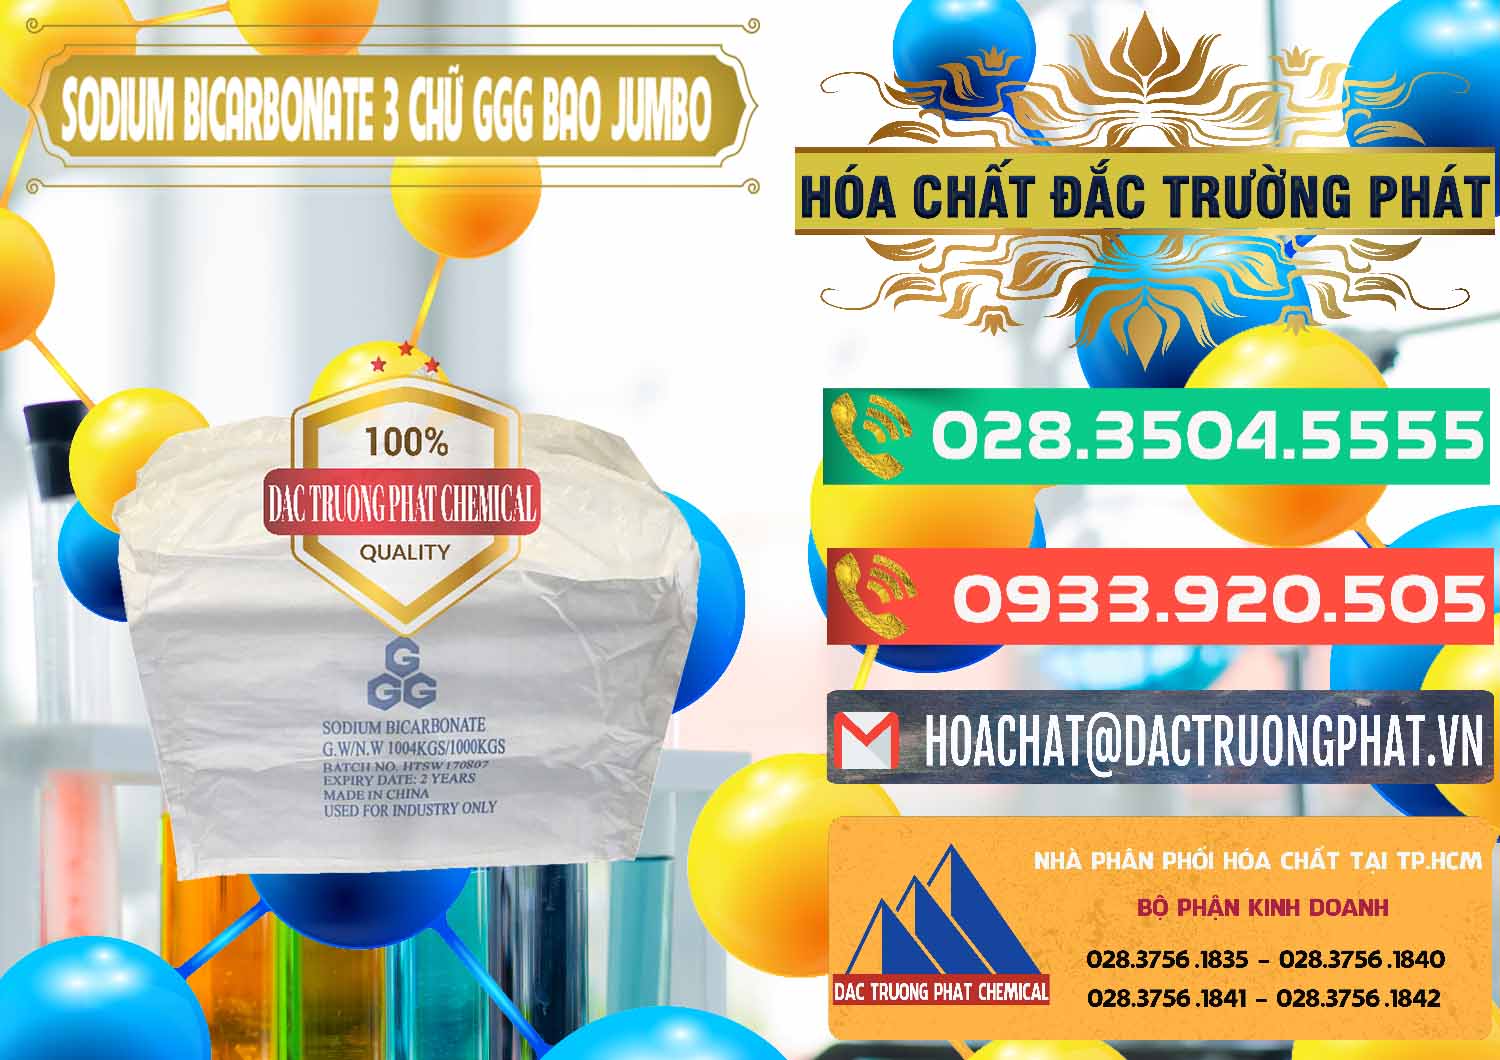 Công ty bán ( cung cấp ) Sodium Bicarbonate – Bicar NaHCO3 Food Grade 3 Chữ GGG Bao Jumbo ( Bành ) Trung Quốc China - 0260 - Chuyên nhập khẩu và phân phối hóa chất tại TP.HCM - congtyhoachat.com.vn